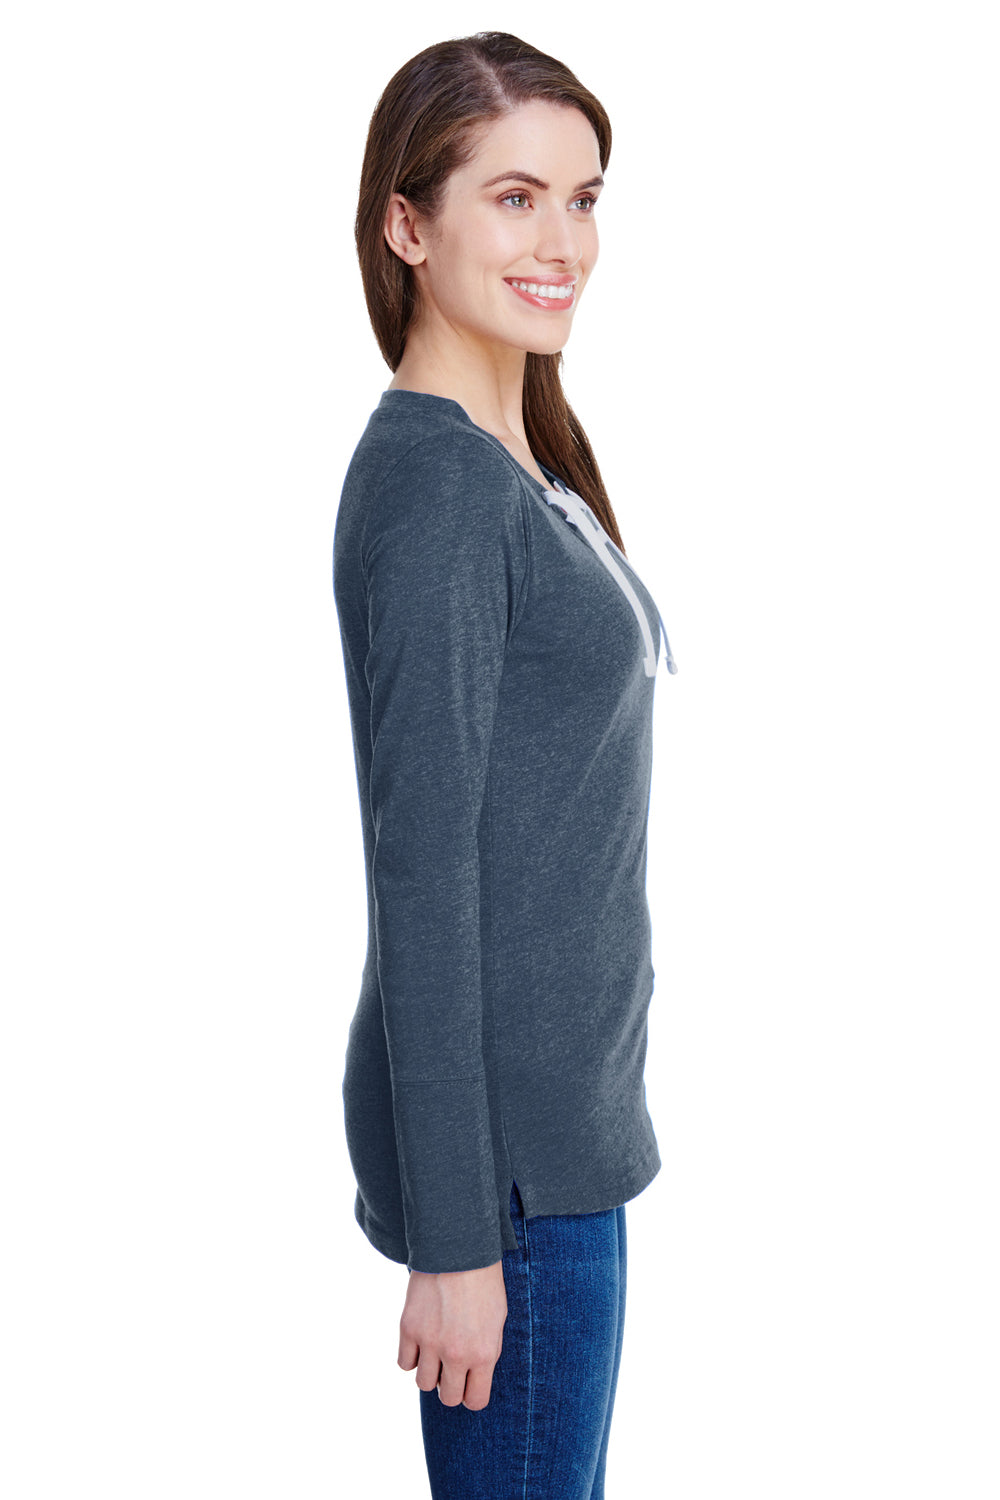 LAT LA3538 Womens Fine Jersey Lace Up Long Sleeve V-Neck T-Shirt Navy Blue Side